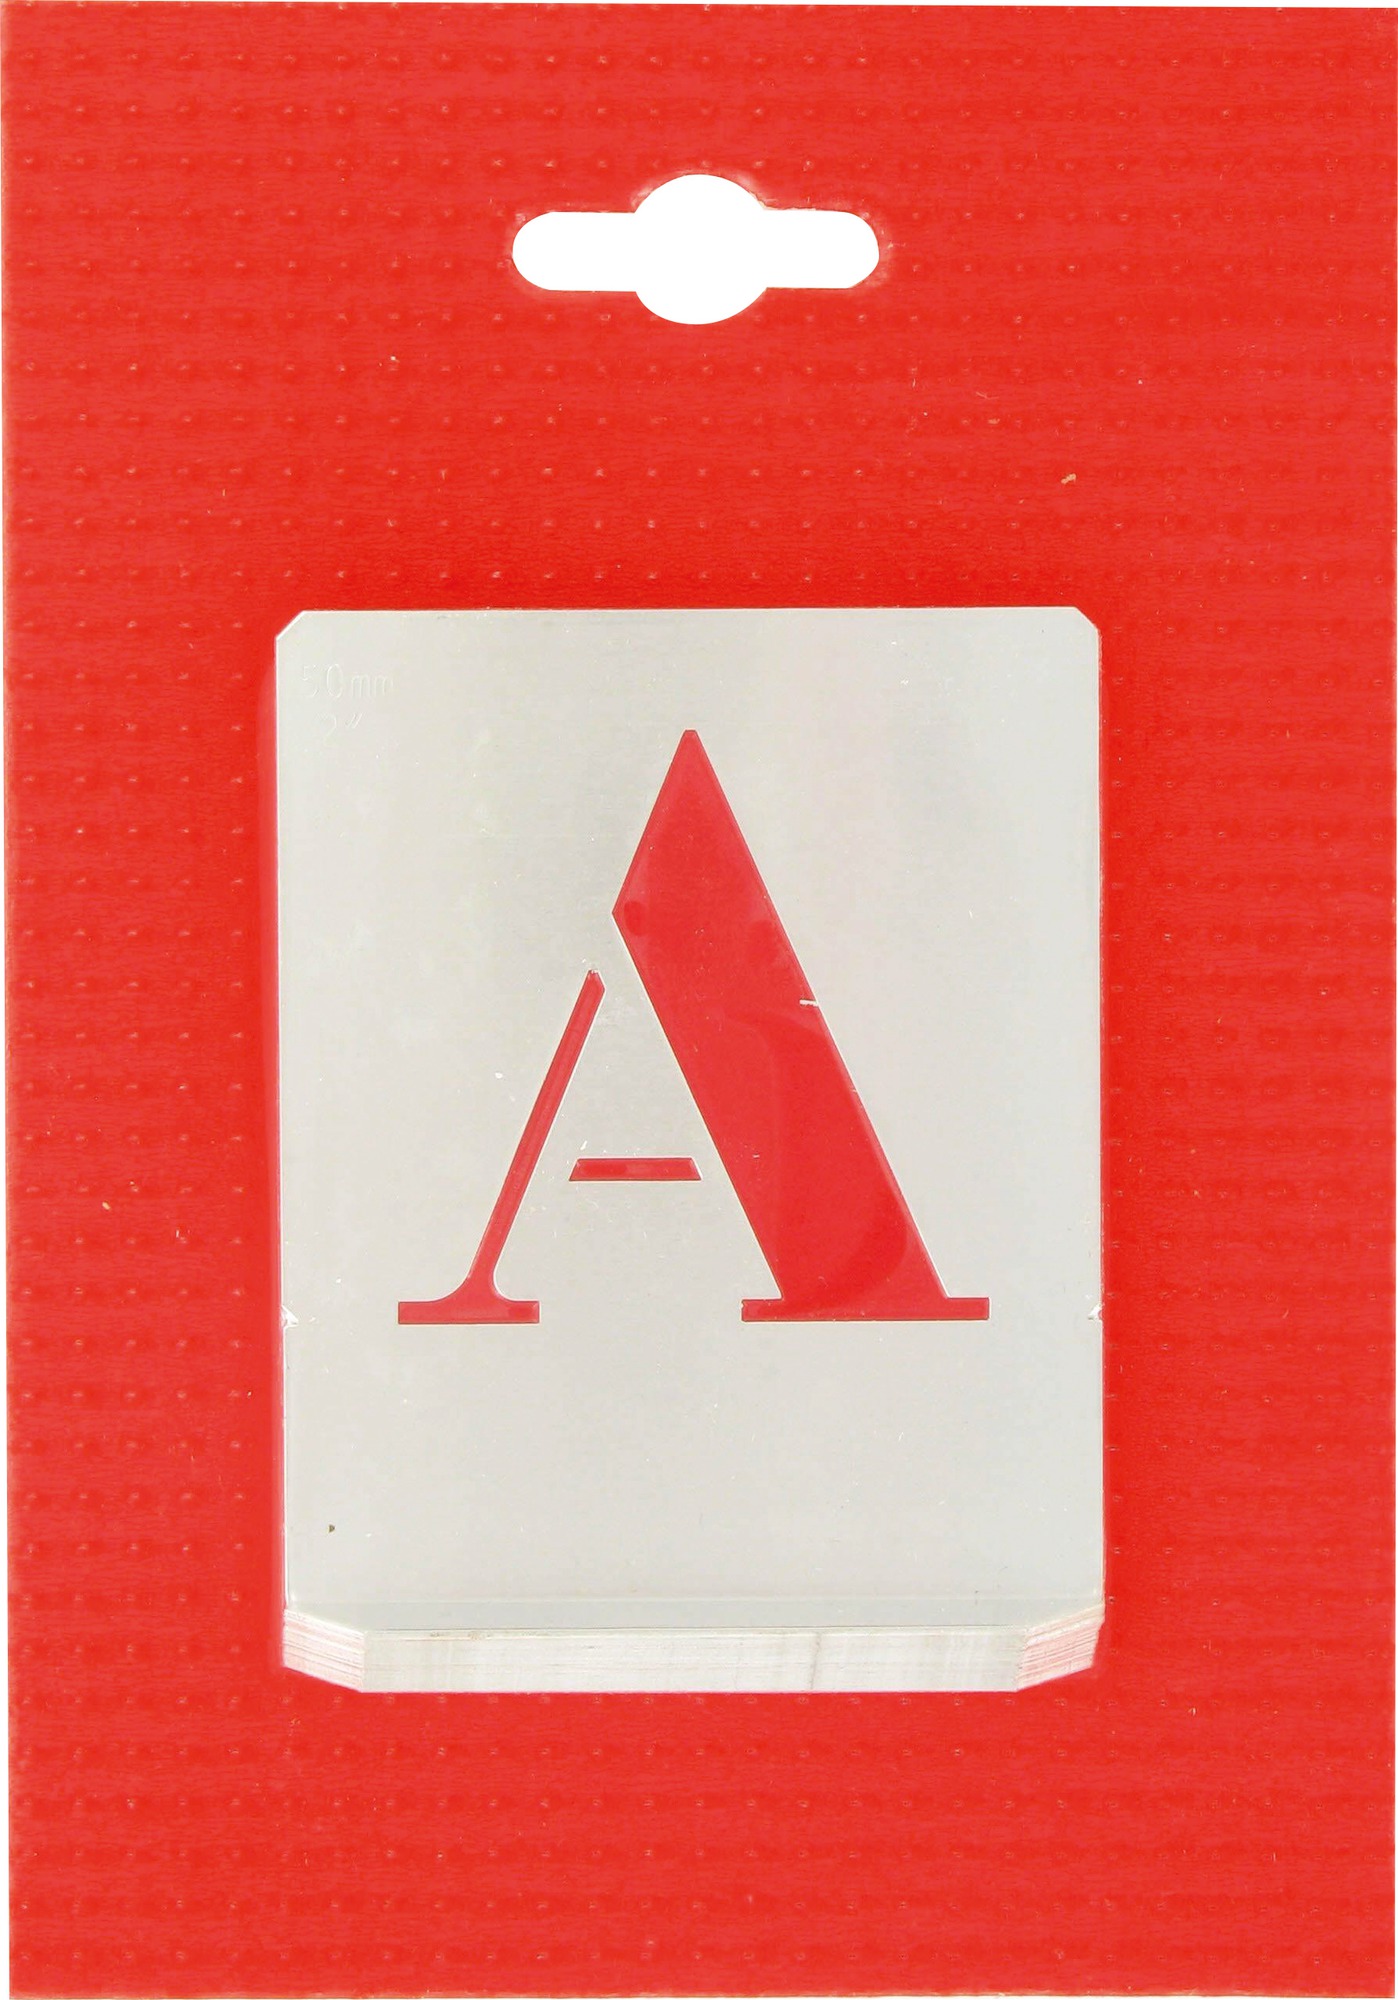 Jeu de lettres pochoirs alphabet aluminium ajouré Uny - Dimensions 50 mm